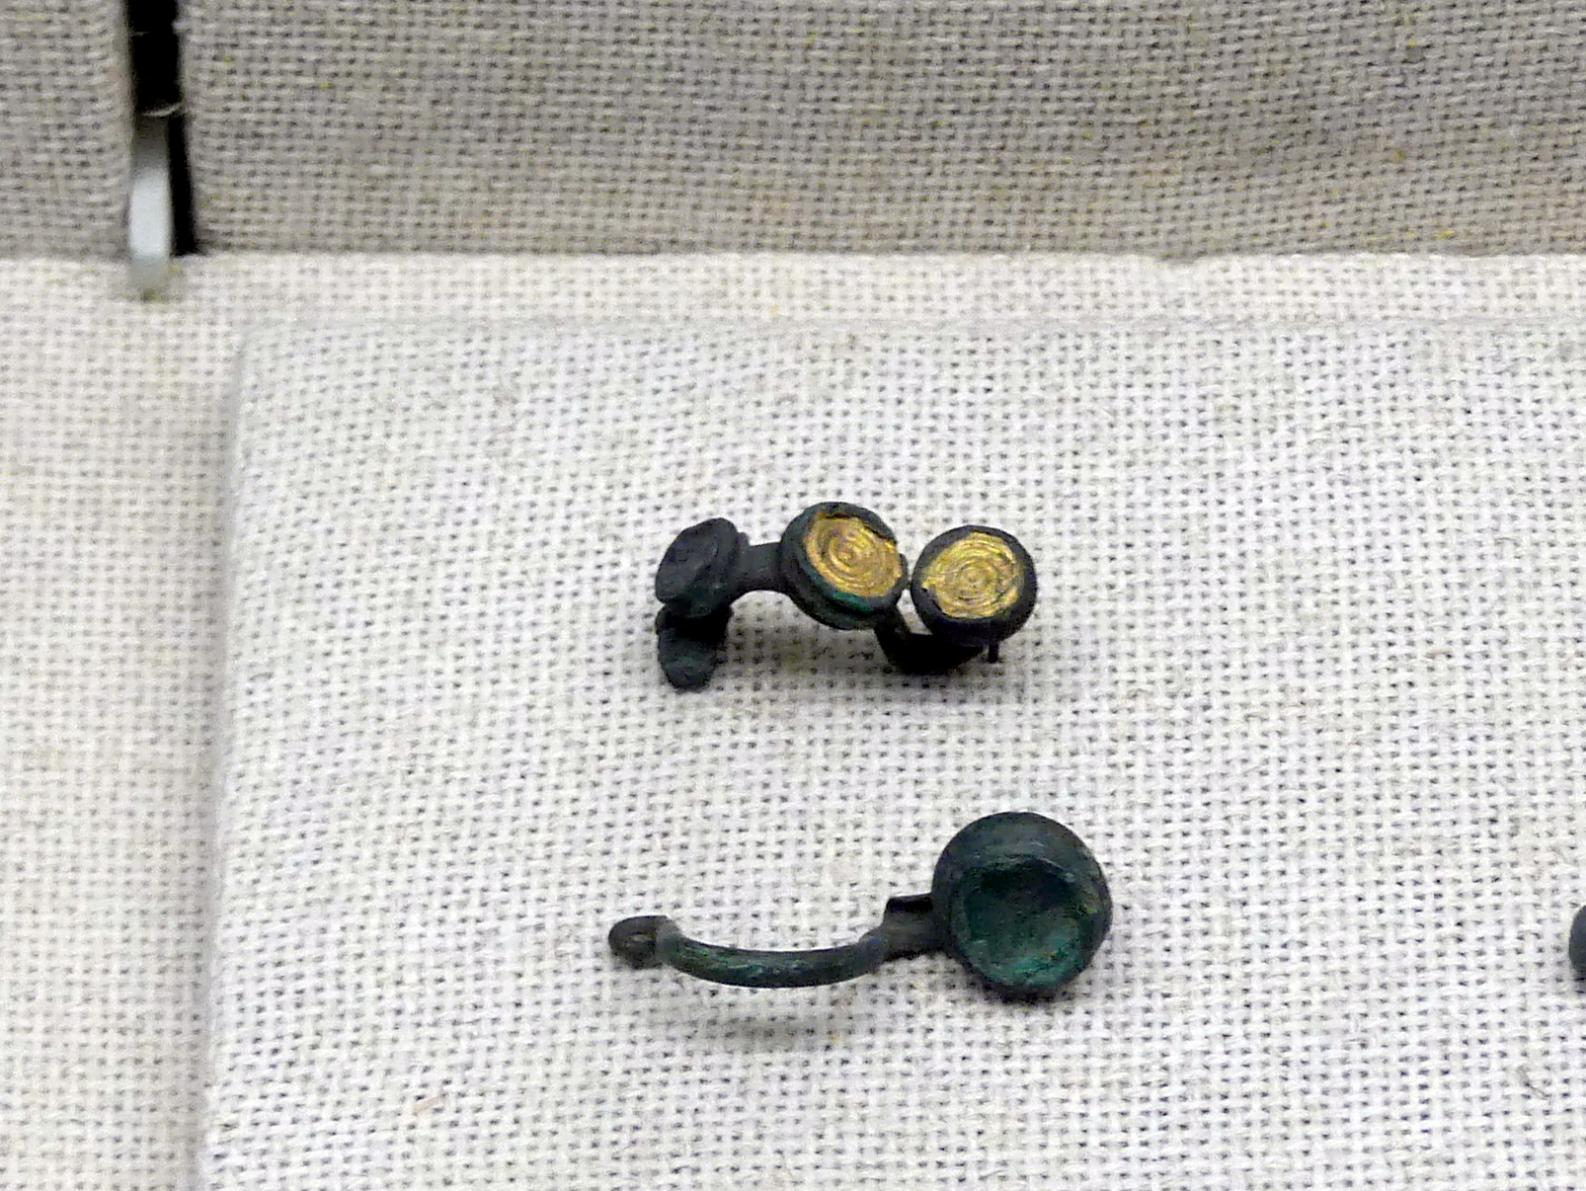 Fußzierfibel mit Goldblecheinlage, Hallstattzeit, 700 - 200 v. Chr., Bild 1/2